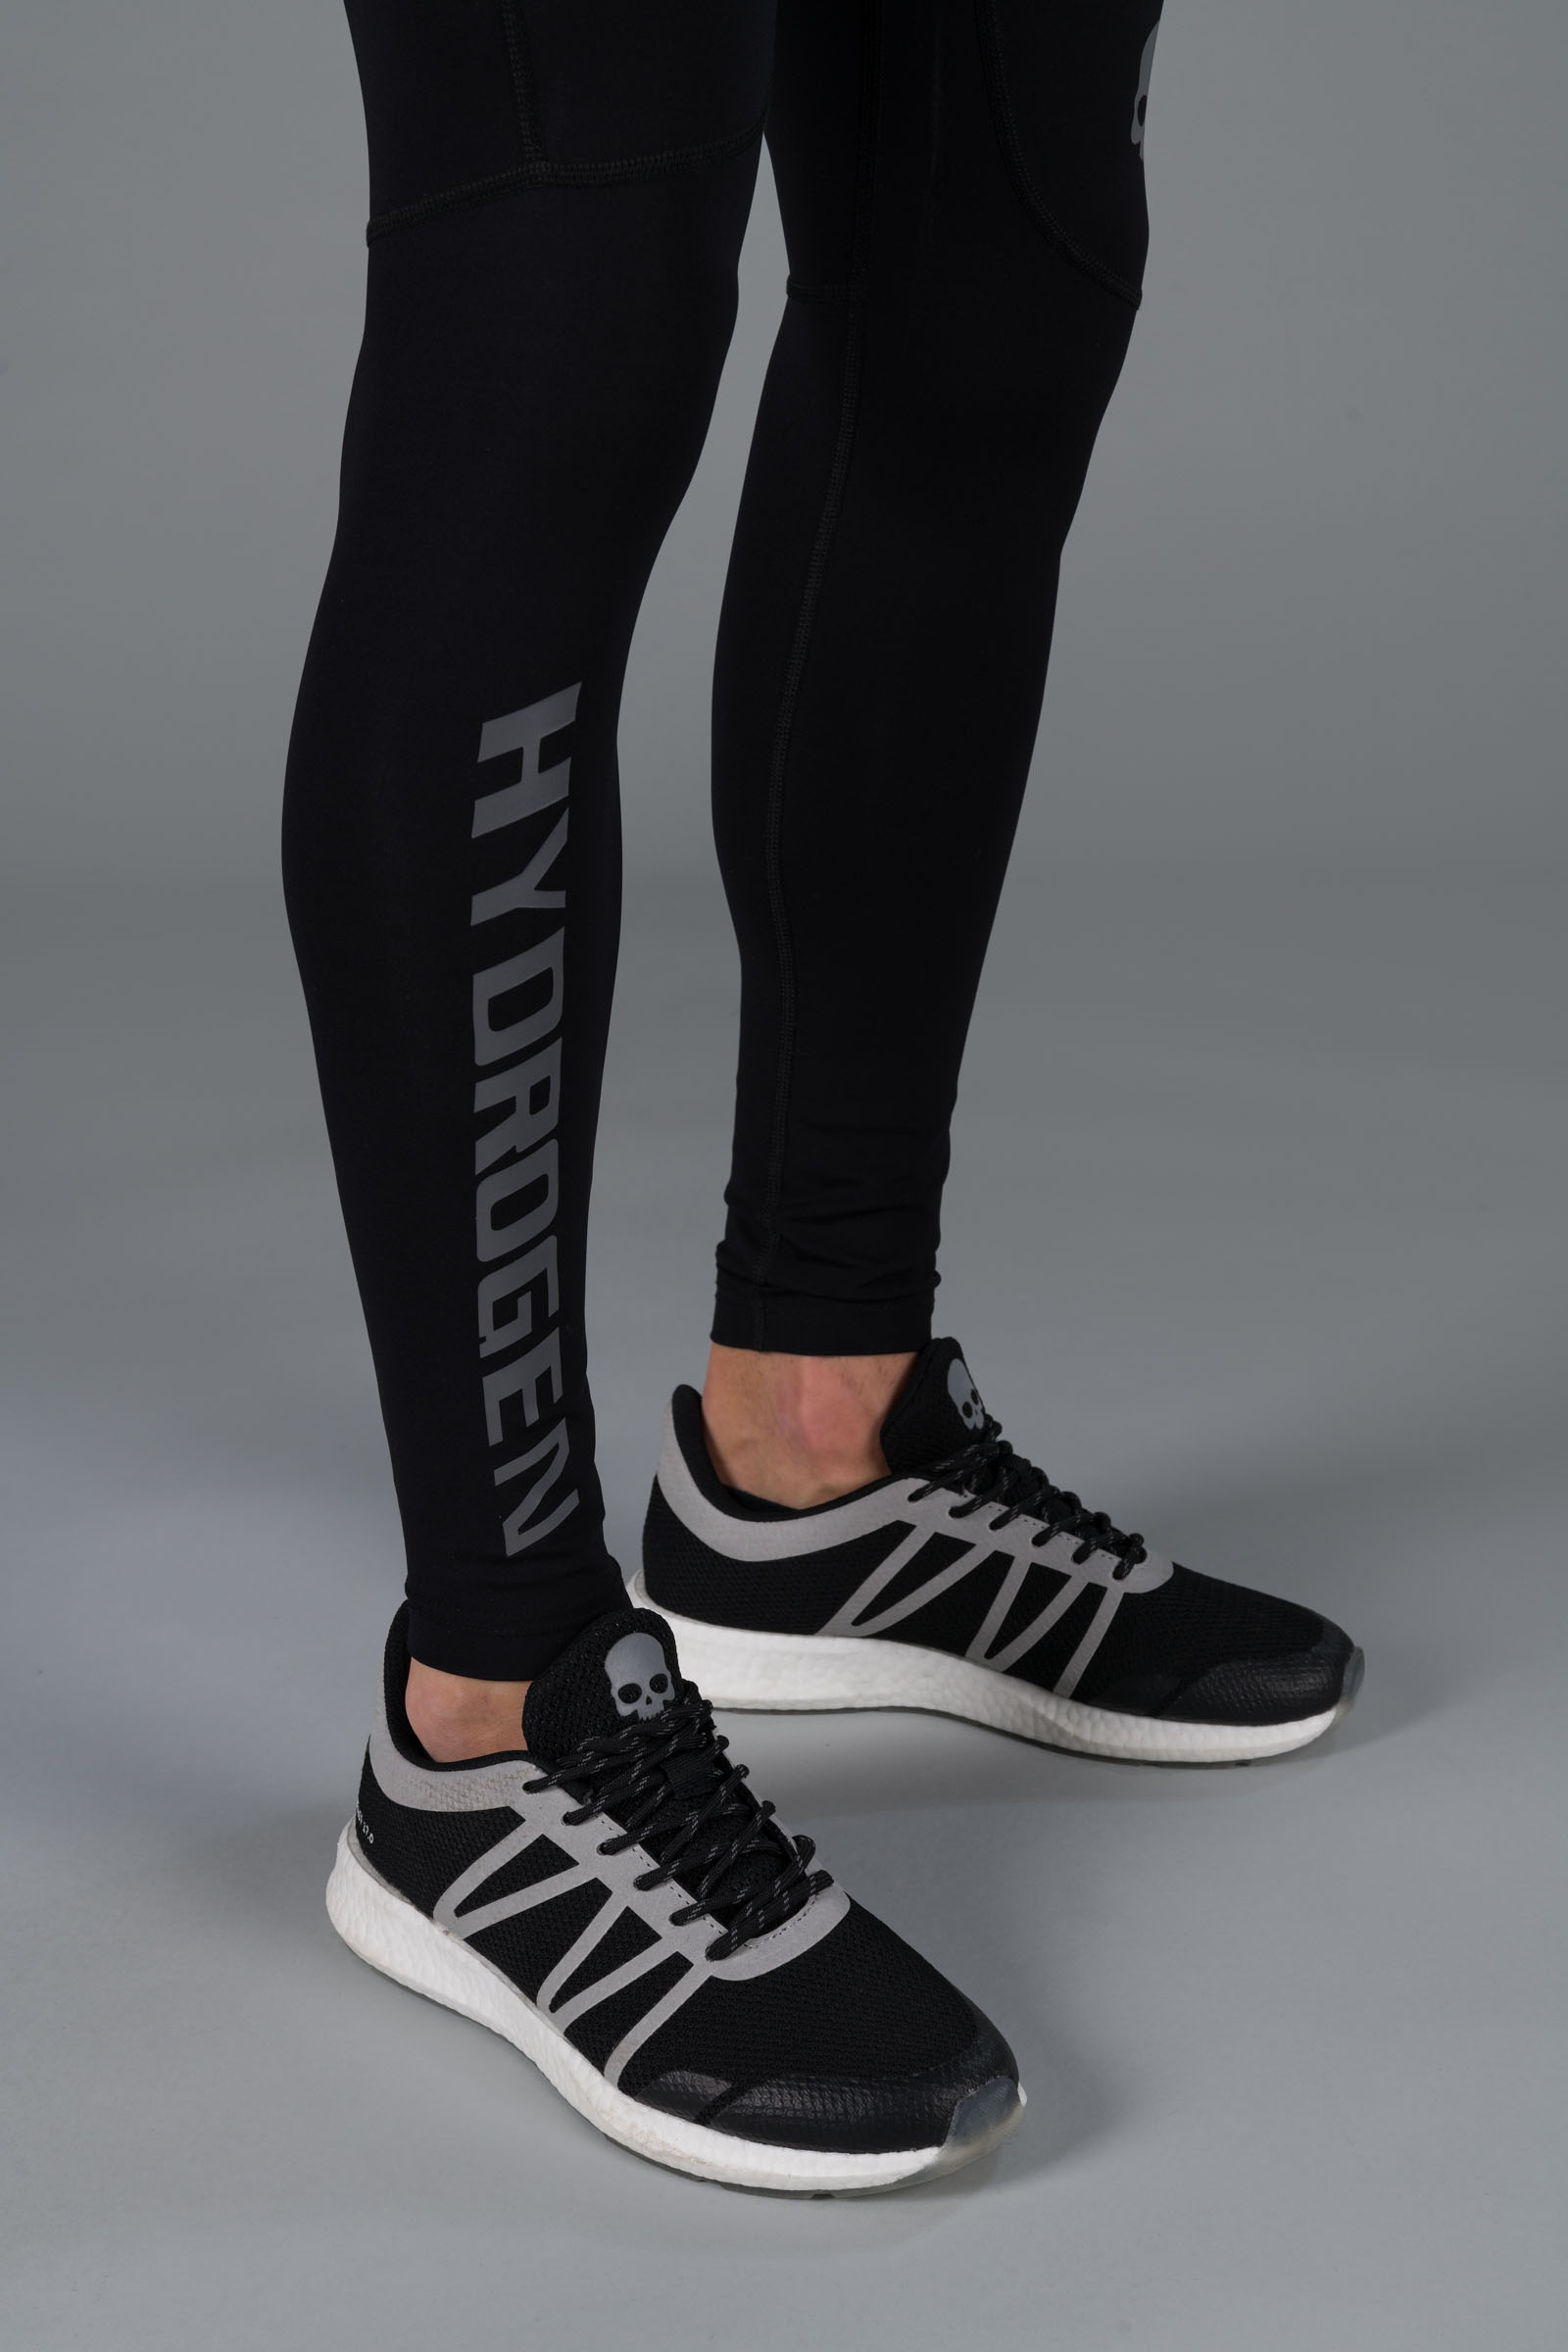 HYDROGEN LEGGINGS - BLACK - Hydrogen - Luxury Sportwear